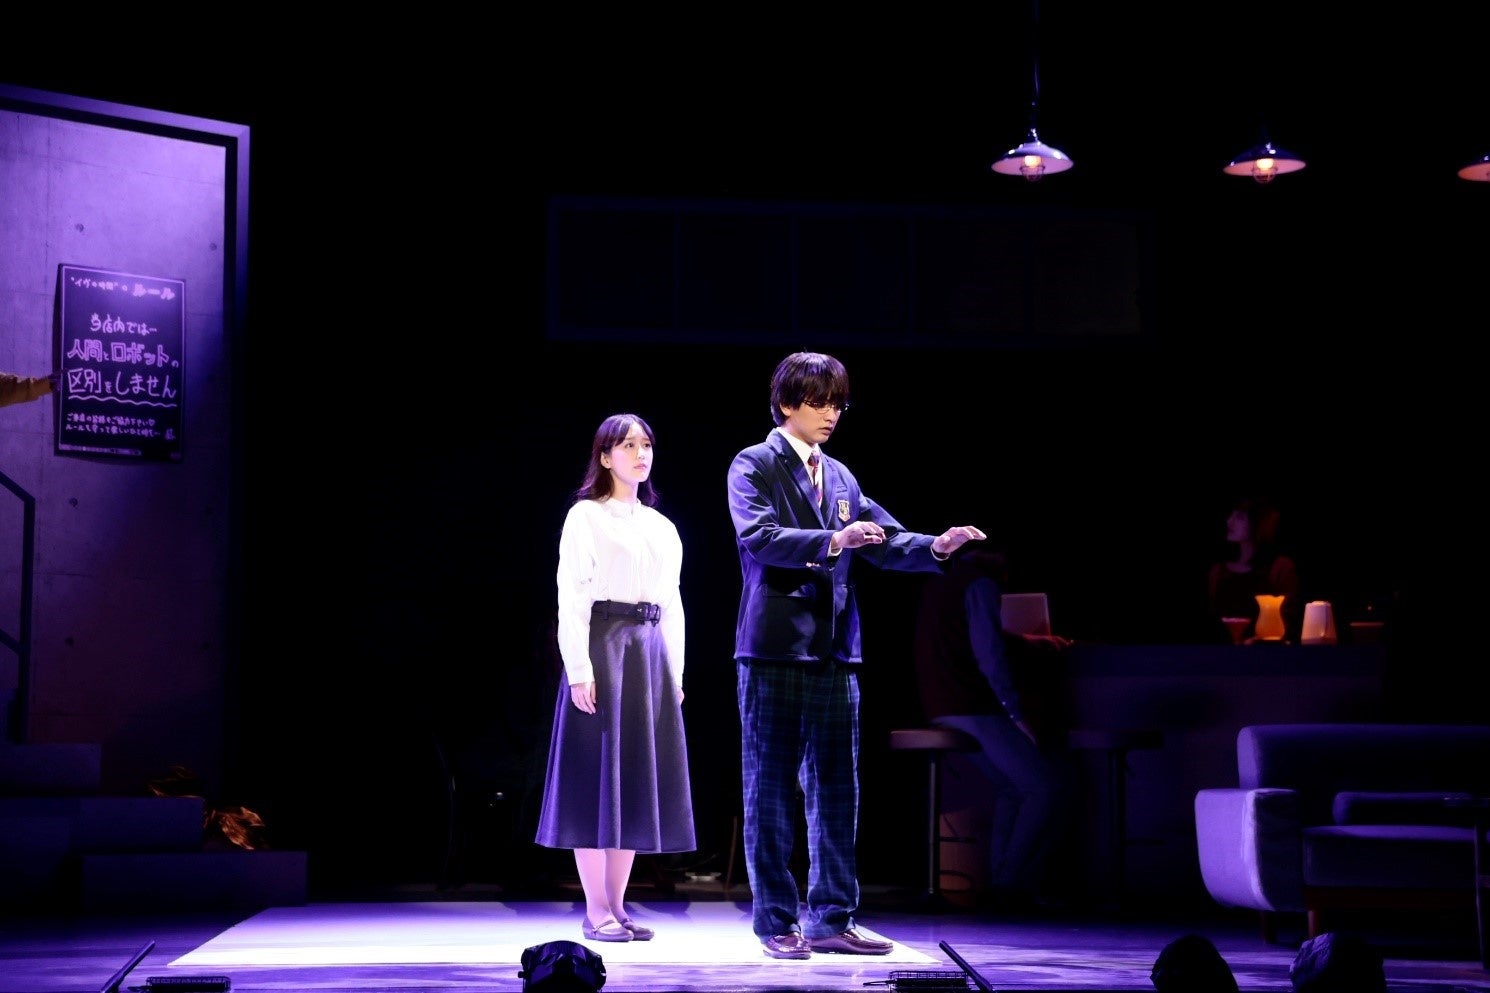 荻田浩一演出、舞台『イヴの時間』が開幕！W主演の瀬戸利樹&花乃まりあからコメントが到着！